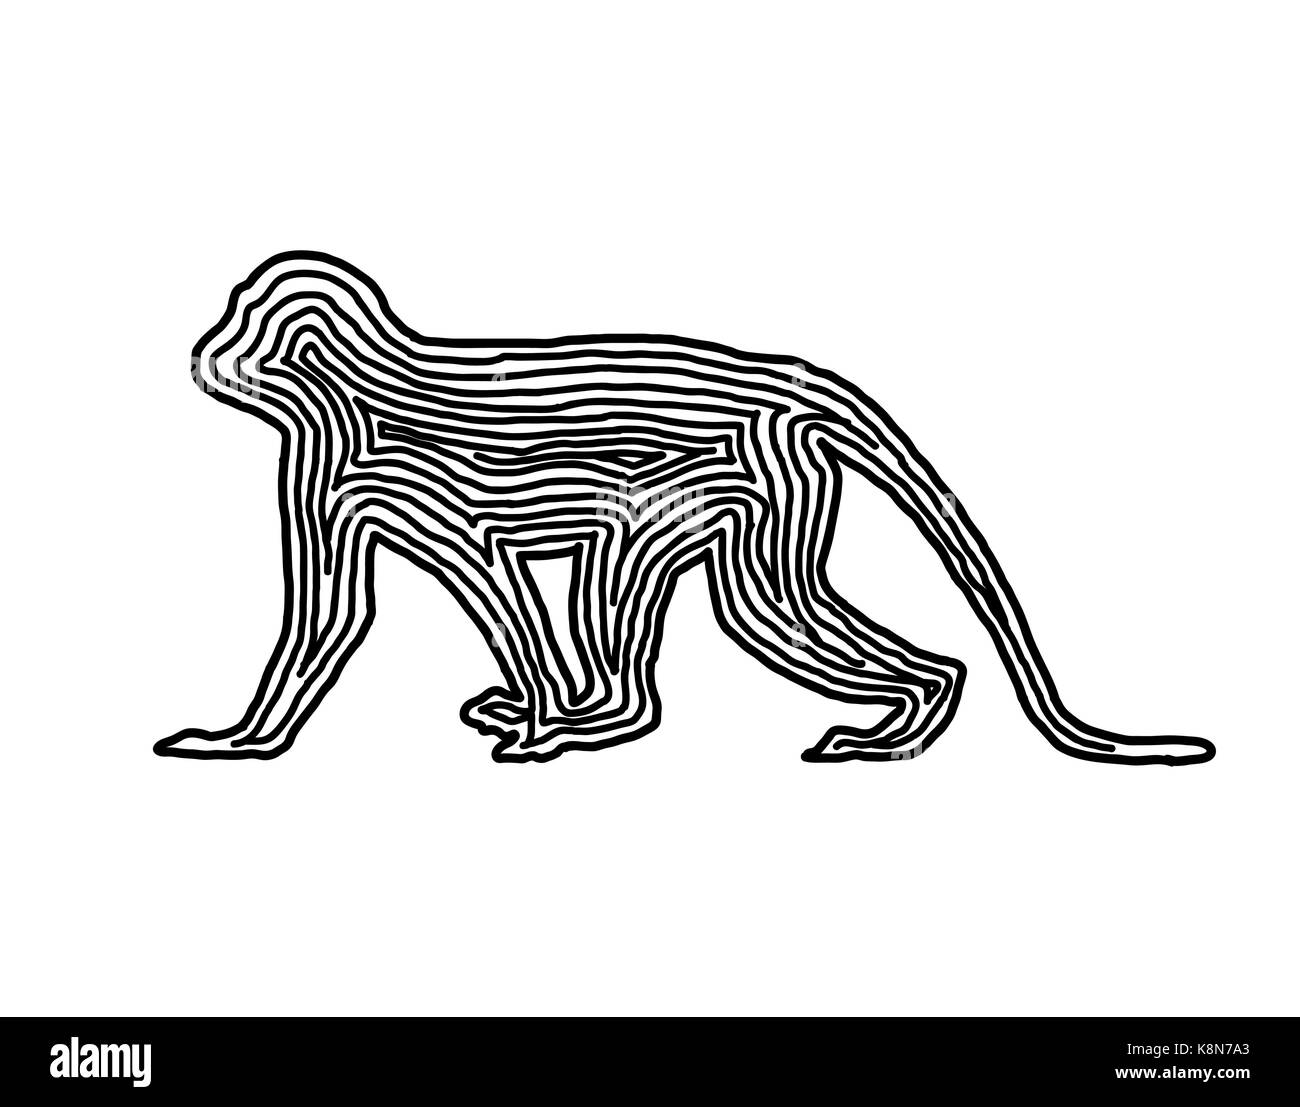 Ein Affe Abbildung Symbol in schwarz abgesetzten Zeile. Fingerabdruck Stil für Logo oder Hintergrund Design. Stock Vektor